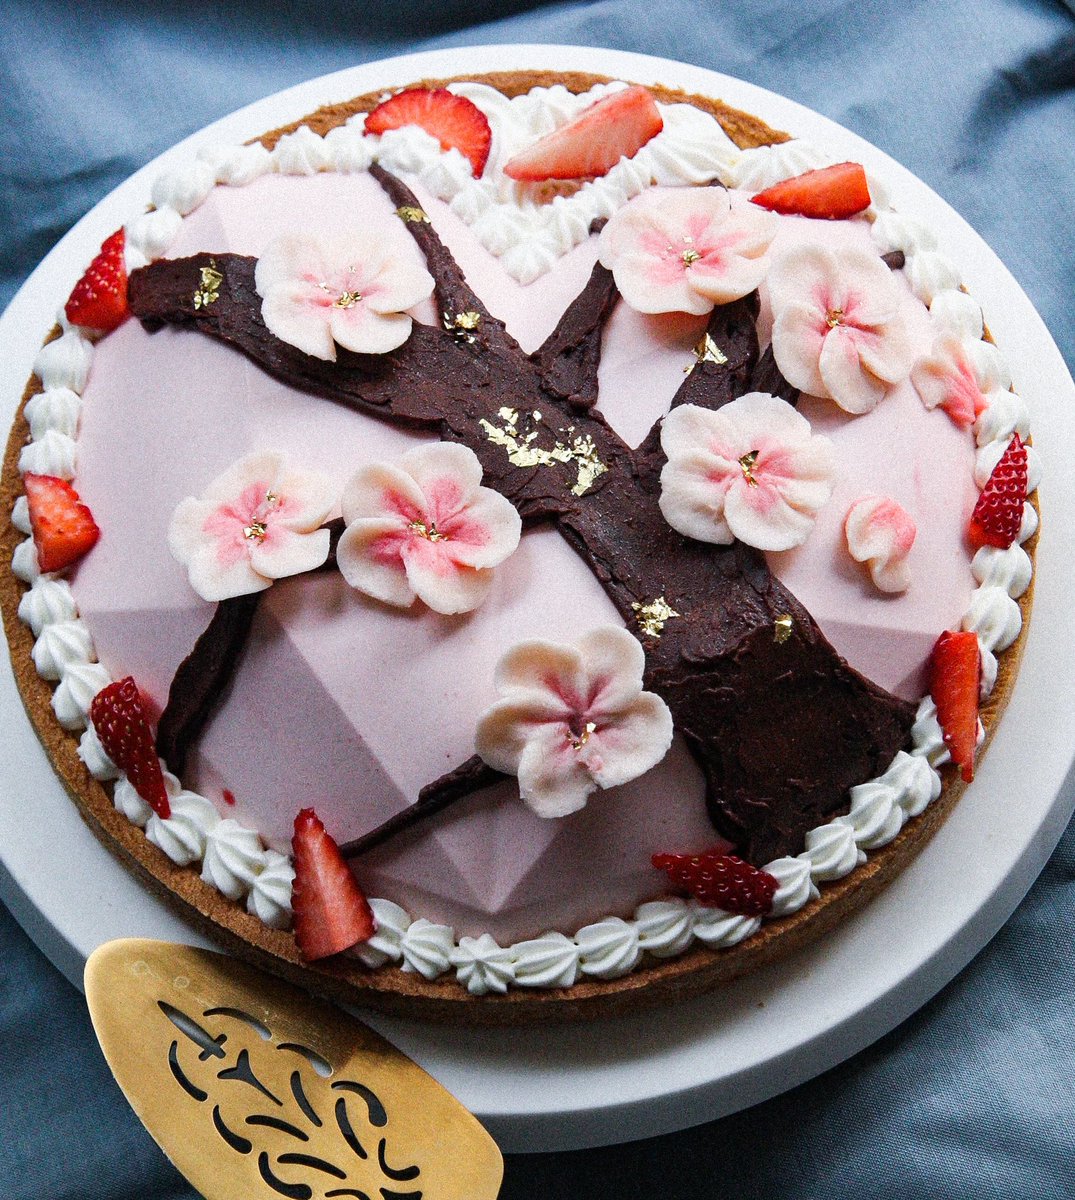 17歳になったので今年も自分で誕生日ケーキを作りました ハートのクリスタルに桜を Soyonのイラスト